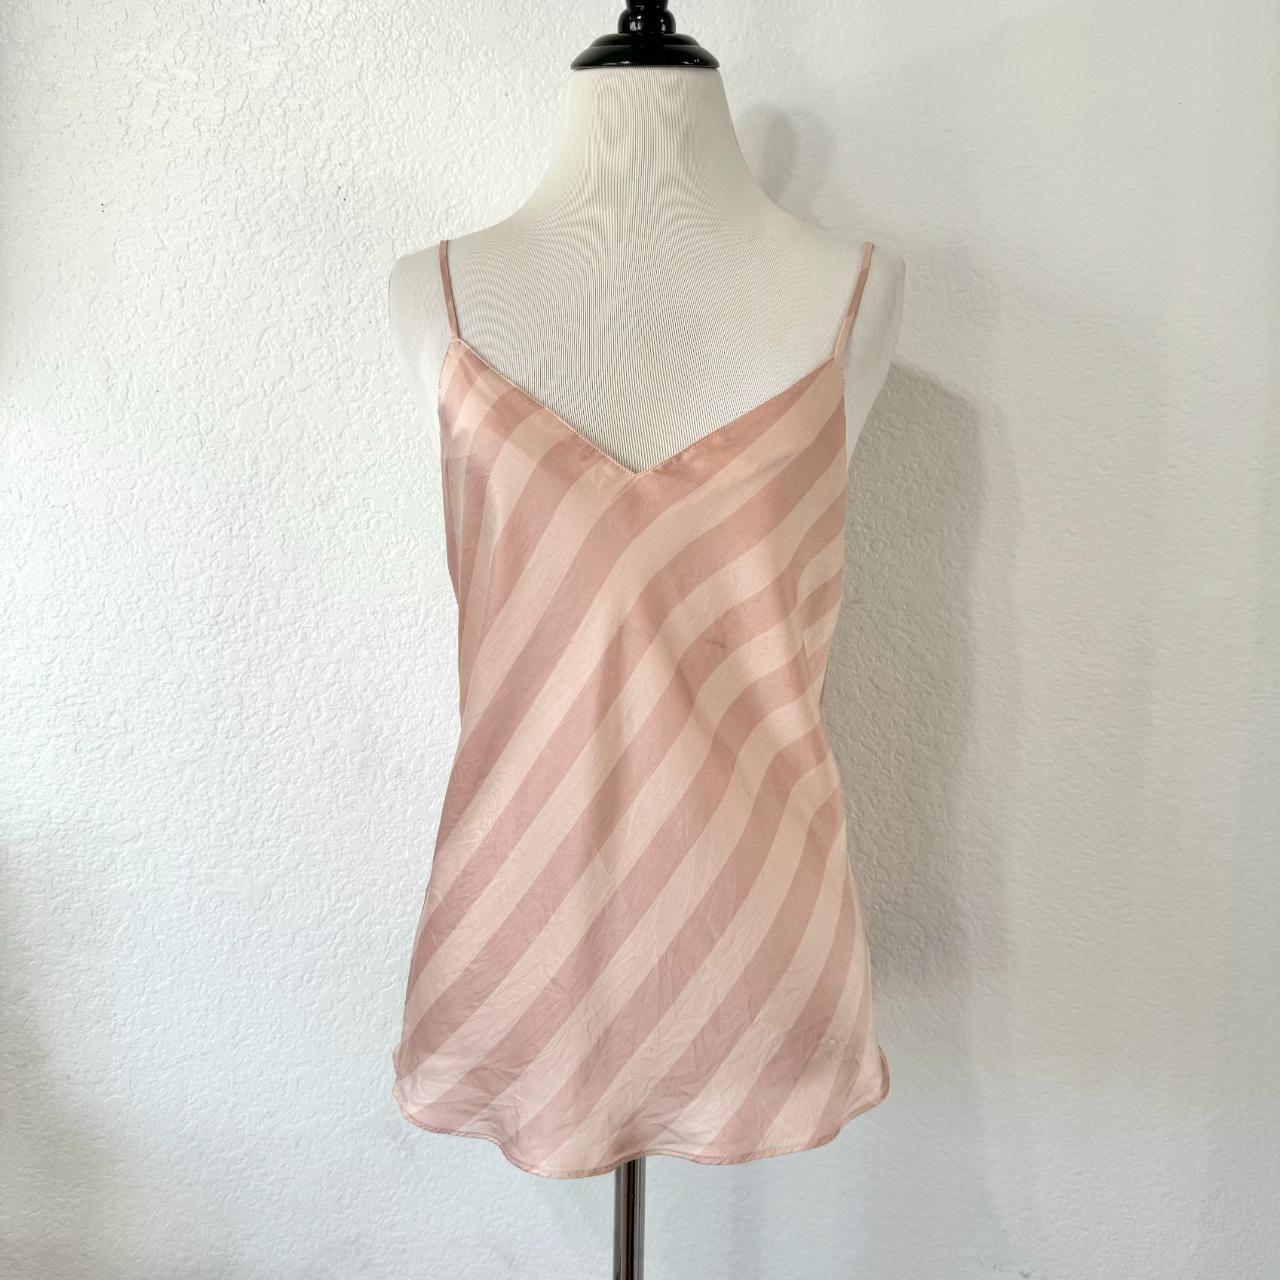 Victoria's Secret 100% Silk Pink Striped Camisole!... - Depop